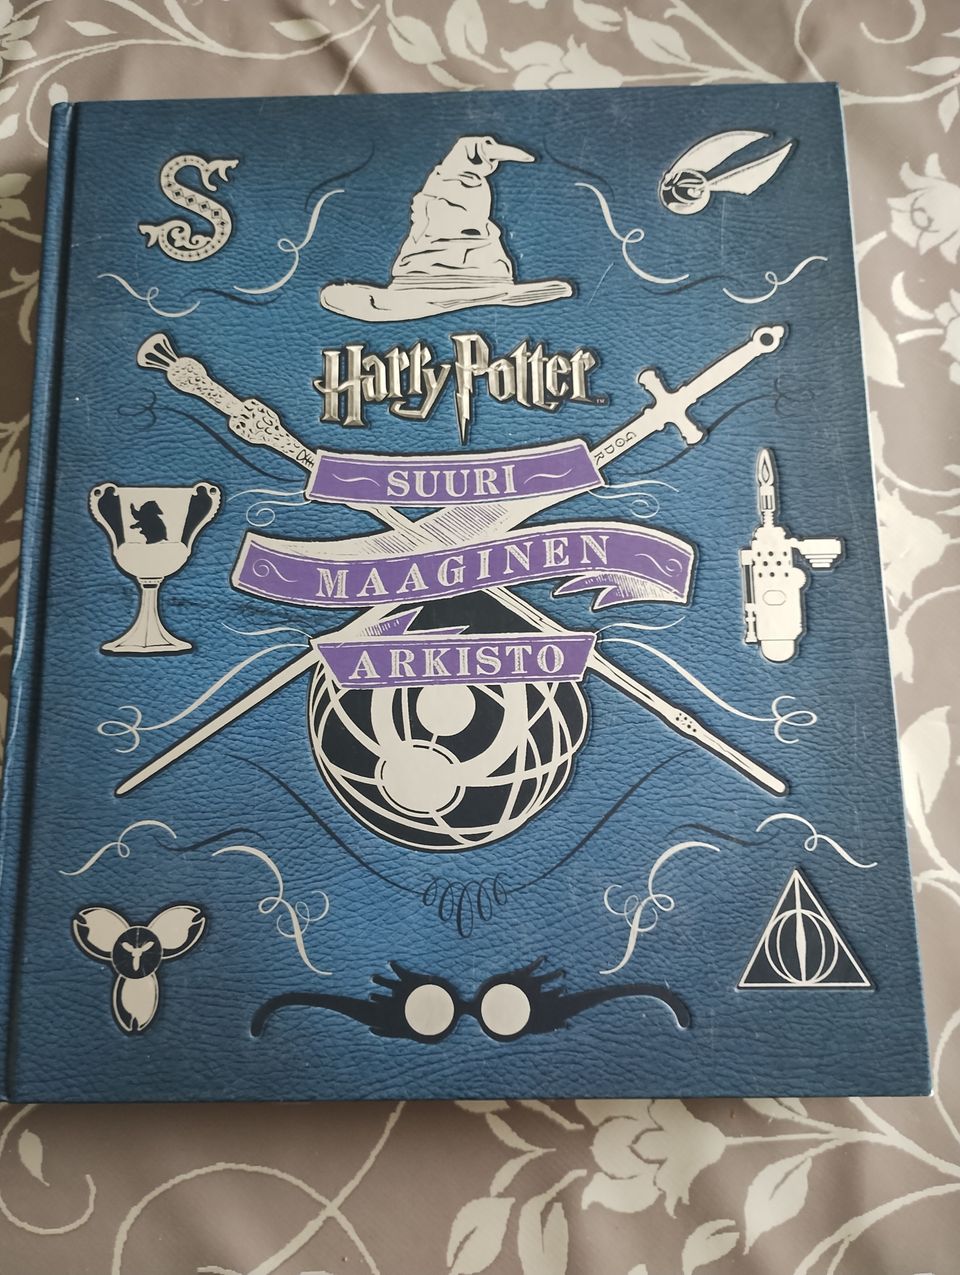 Harry Potter Suuri maaginen arkisto